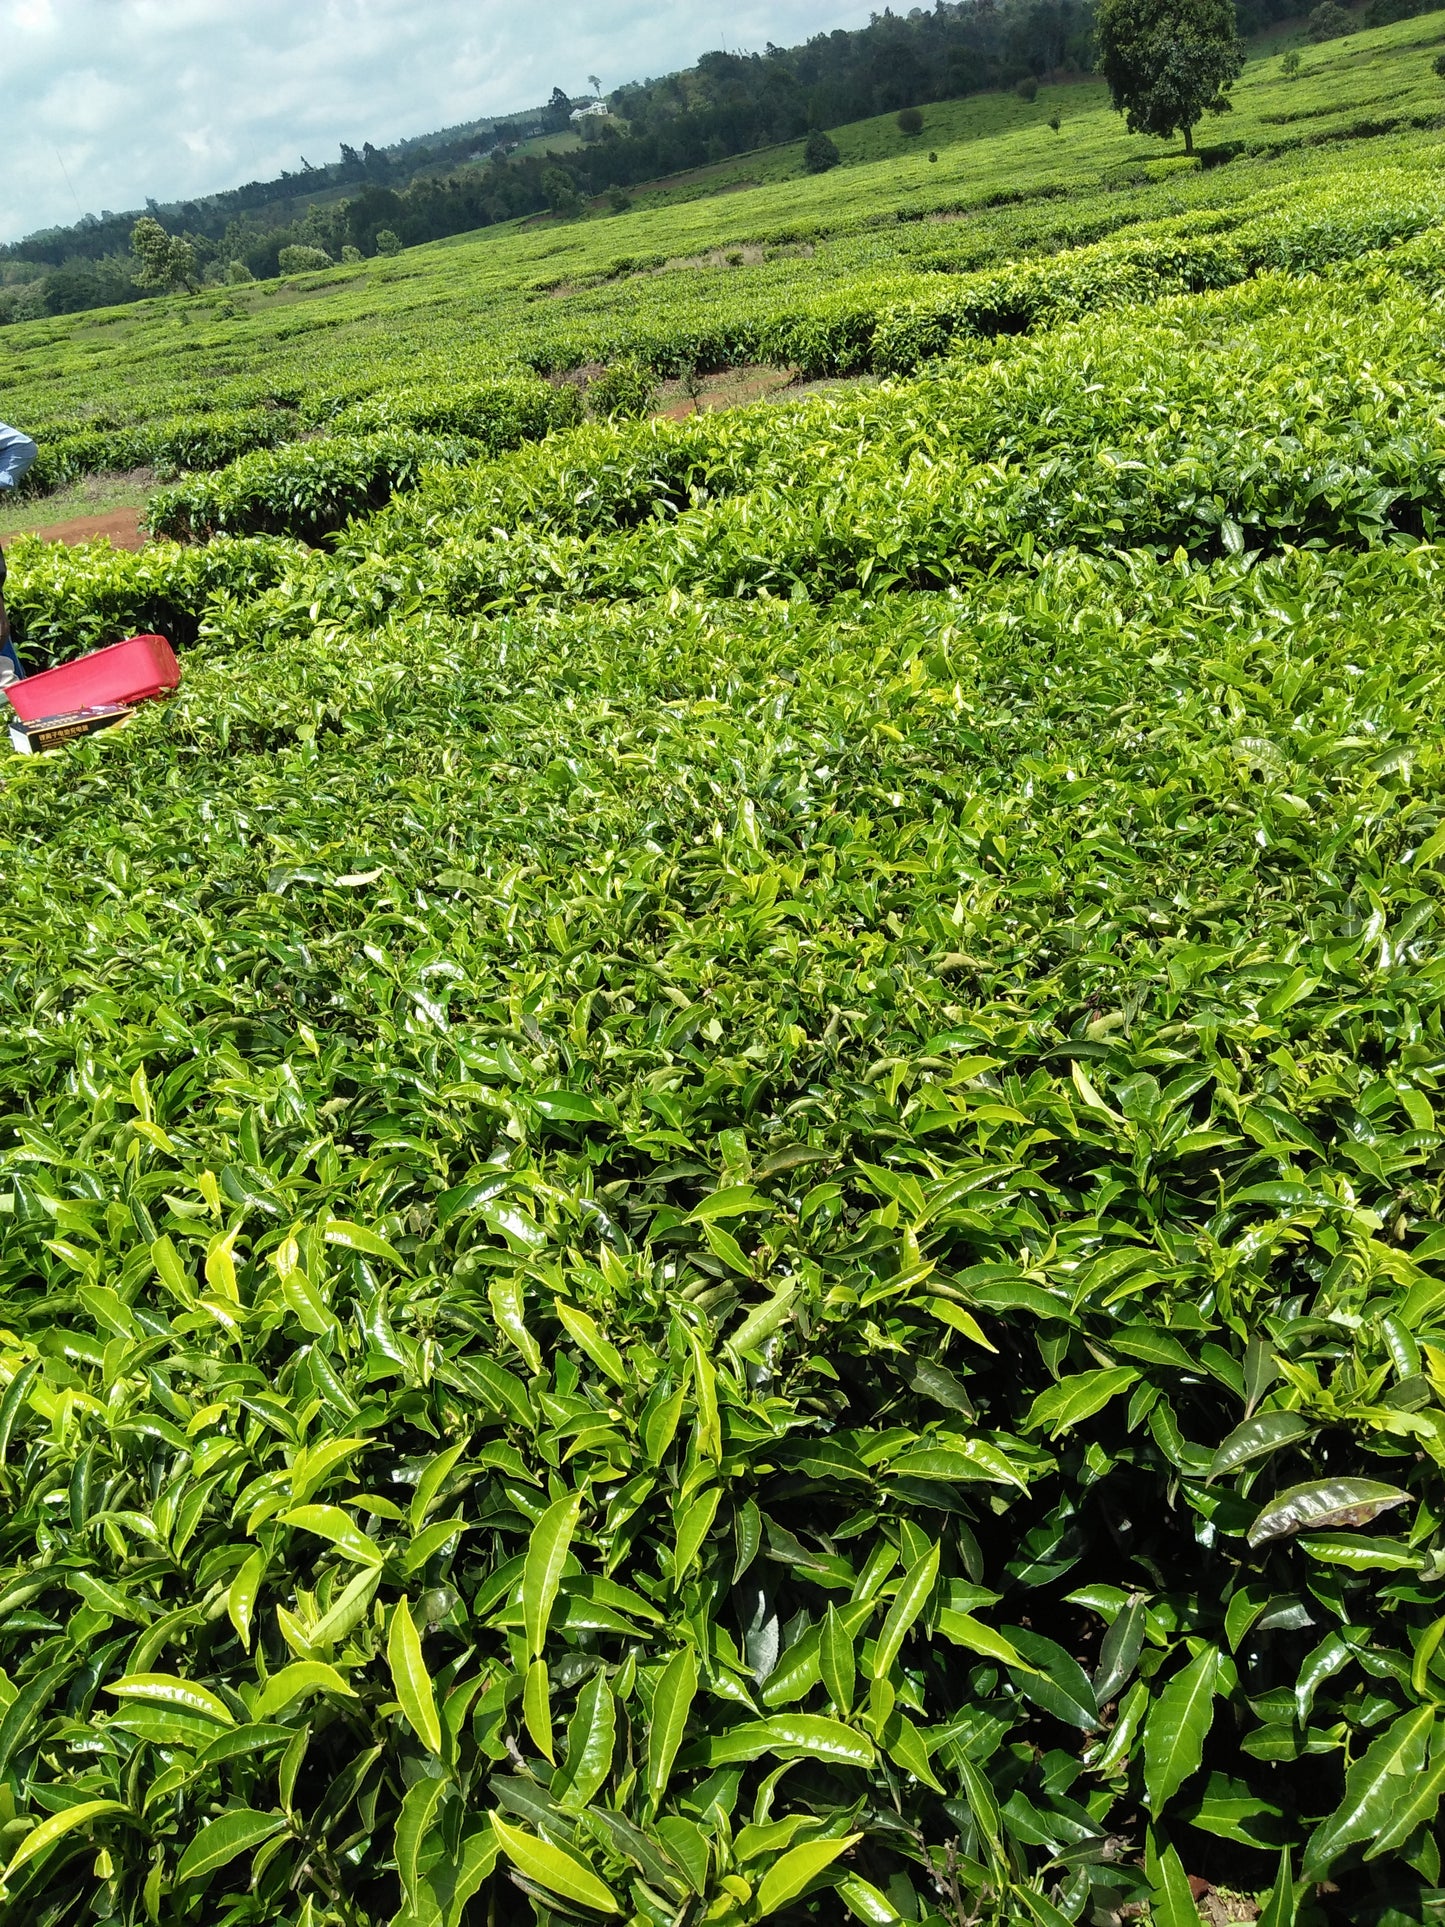 Tea plucking machines are widely used in Kenya's tea growing regions .